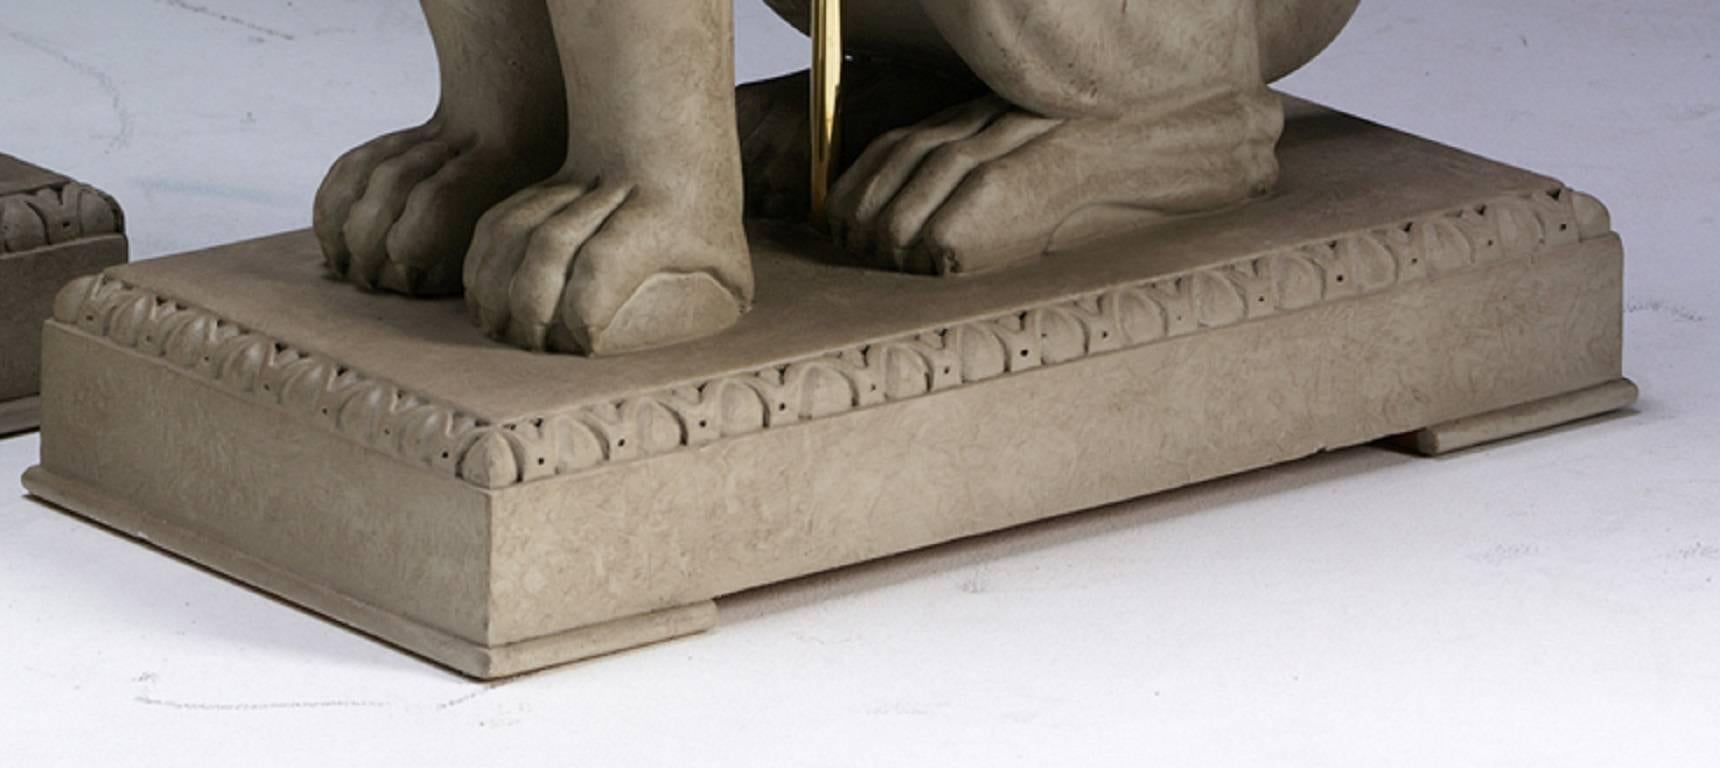 Une lampe de table en bois sculpté de style Régence anglaise, à la manière de Charles Heathcote Tatham. Ce griffon sculpté assis, qui est également un symbole héraldique de vigilance et de courage, repose sur une plinthe moulée en forme d'œuf et de